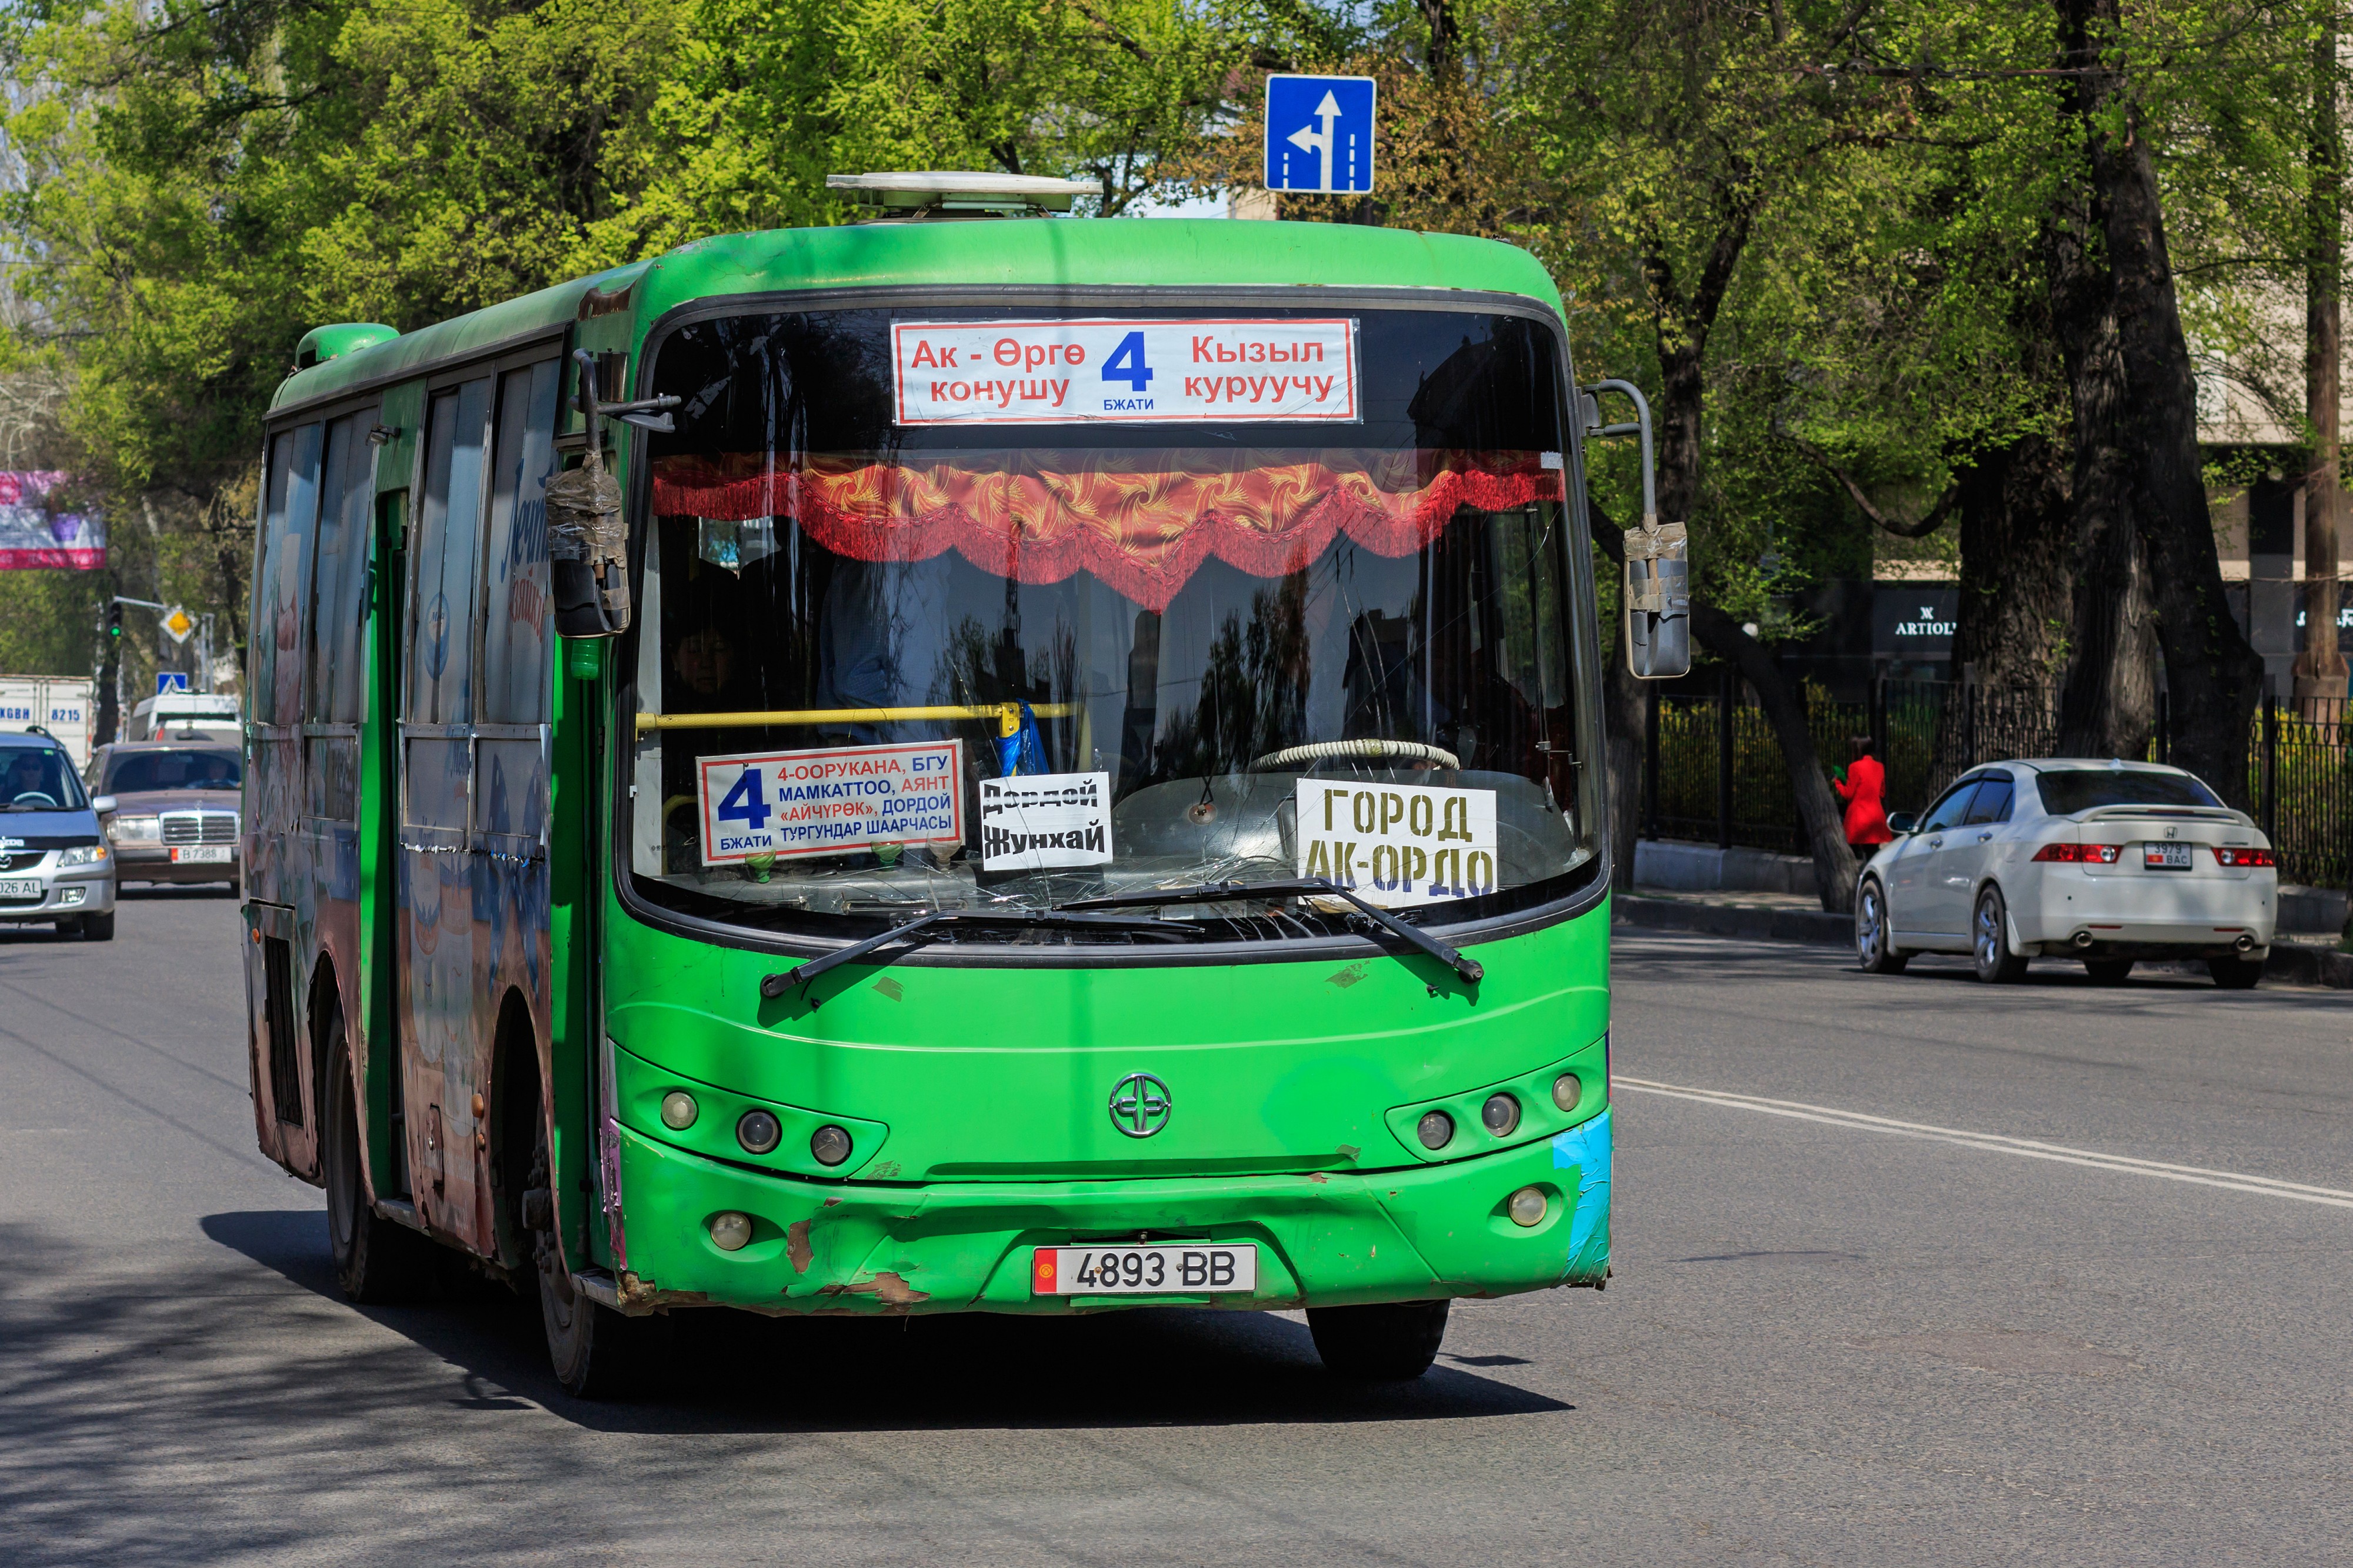 Bishkek 03-2016 img04 bus at Abdrahmanova Street